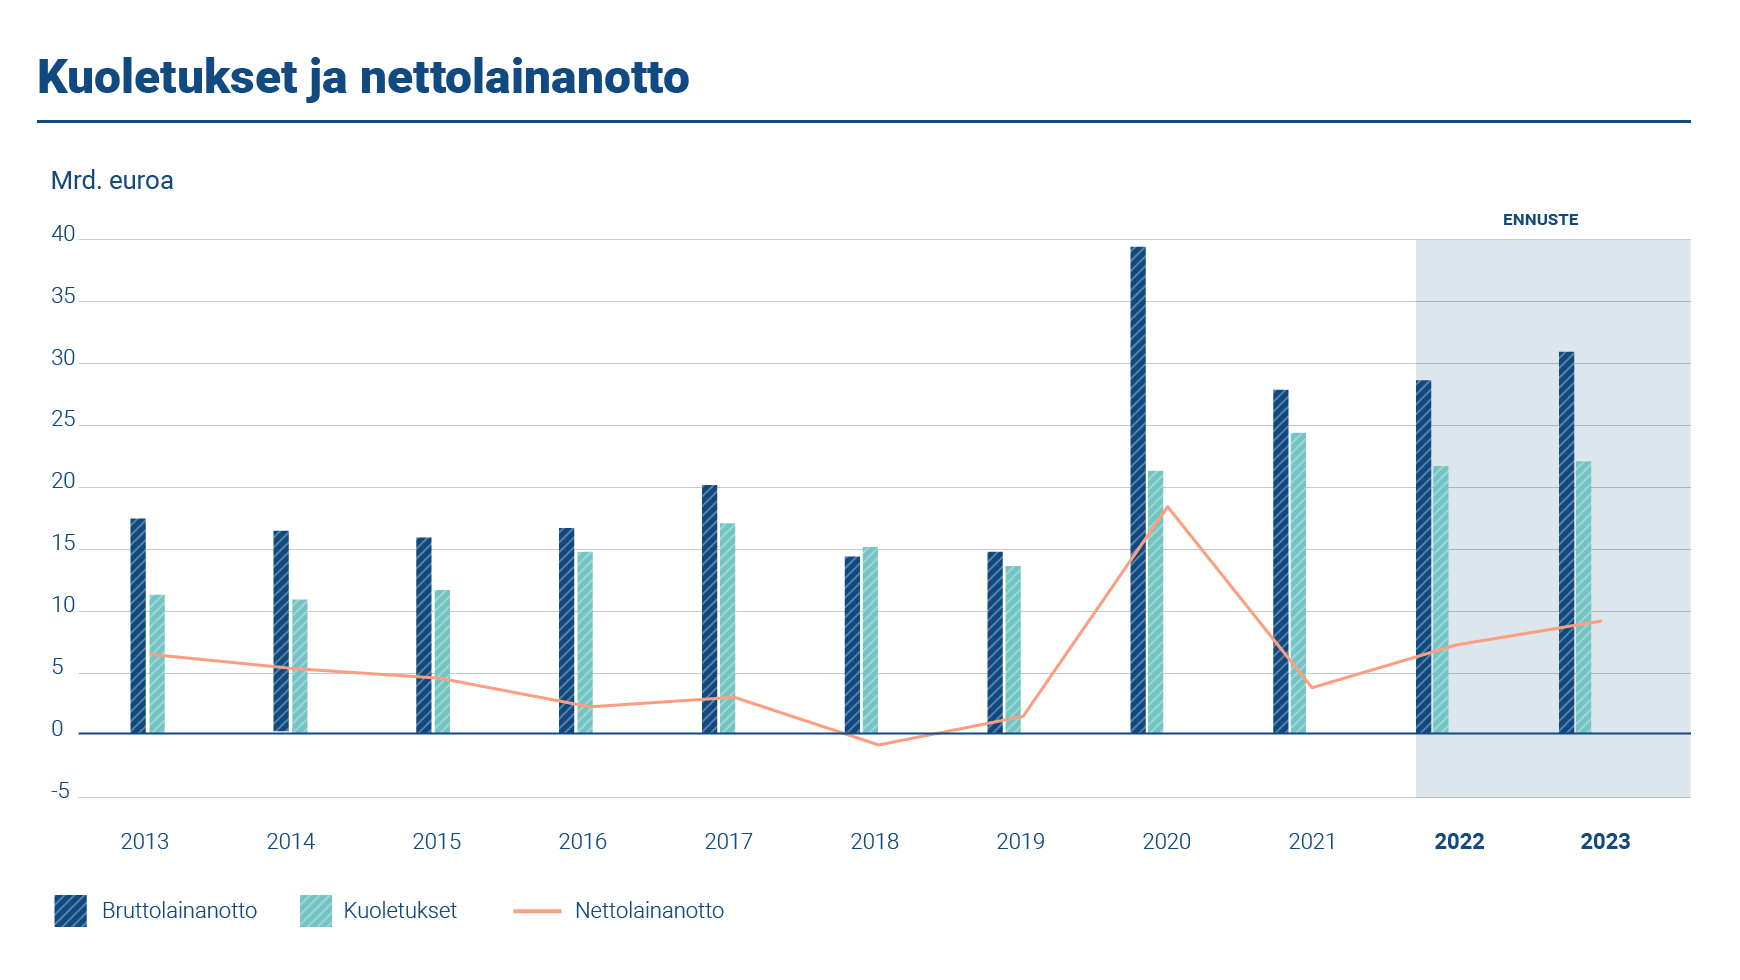 Kaaviossa esitetään vuosittainen bruttolainanotto, kuoletukset ja nettolainanotto vuosina 2013–2023. Kuoletuksia oli 24,15 miljardin euron edestä ja nettolainanoton määrä oli 3,68 miljardia euroa vuonna 2021.